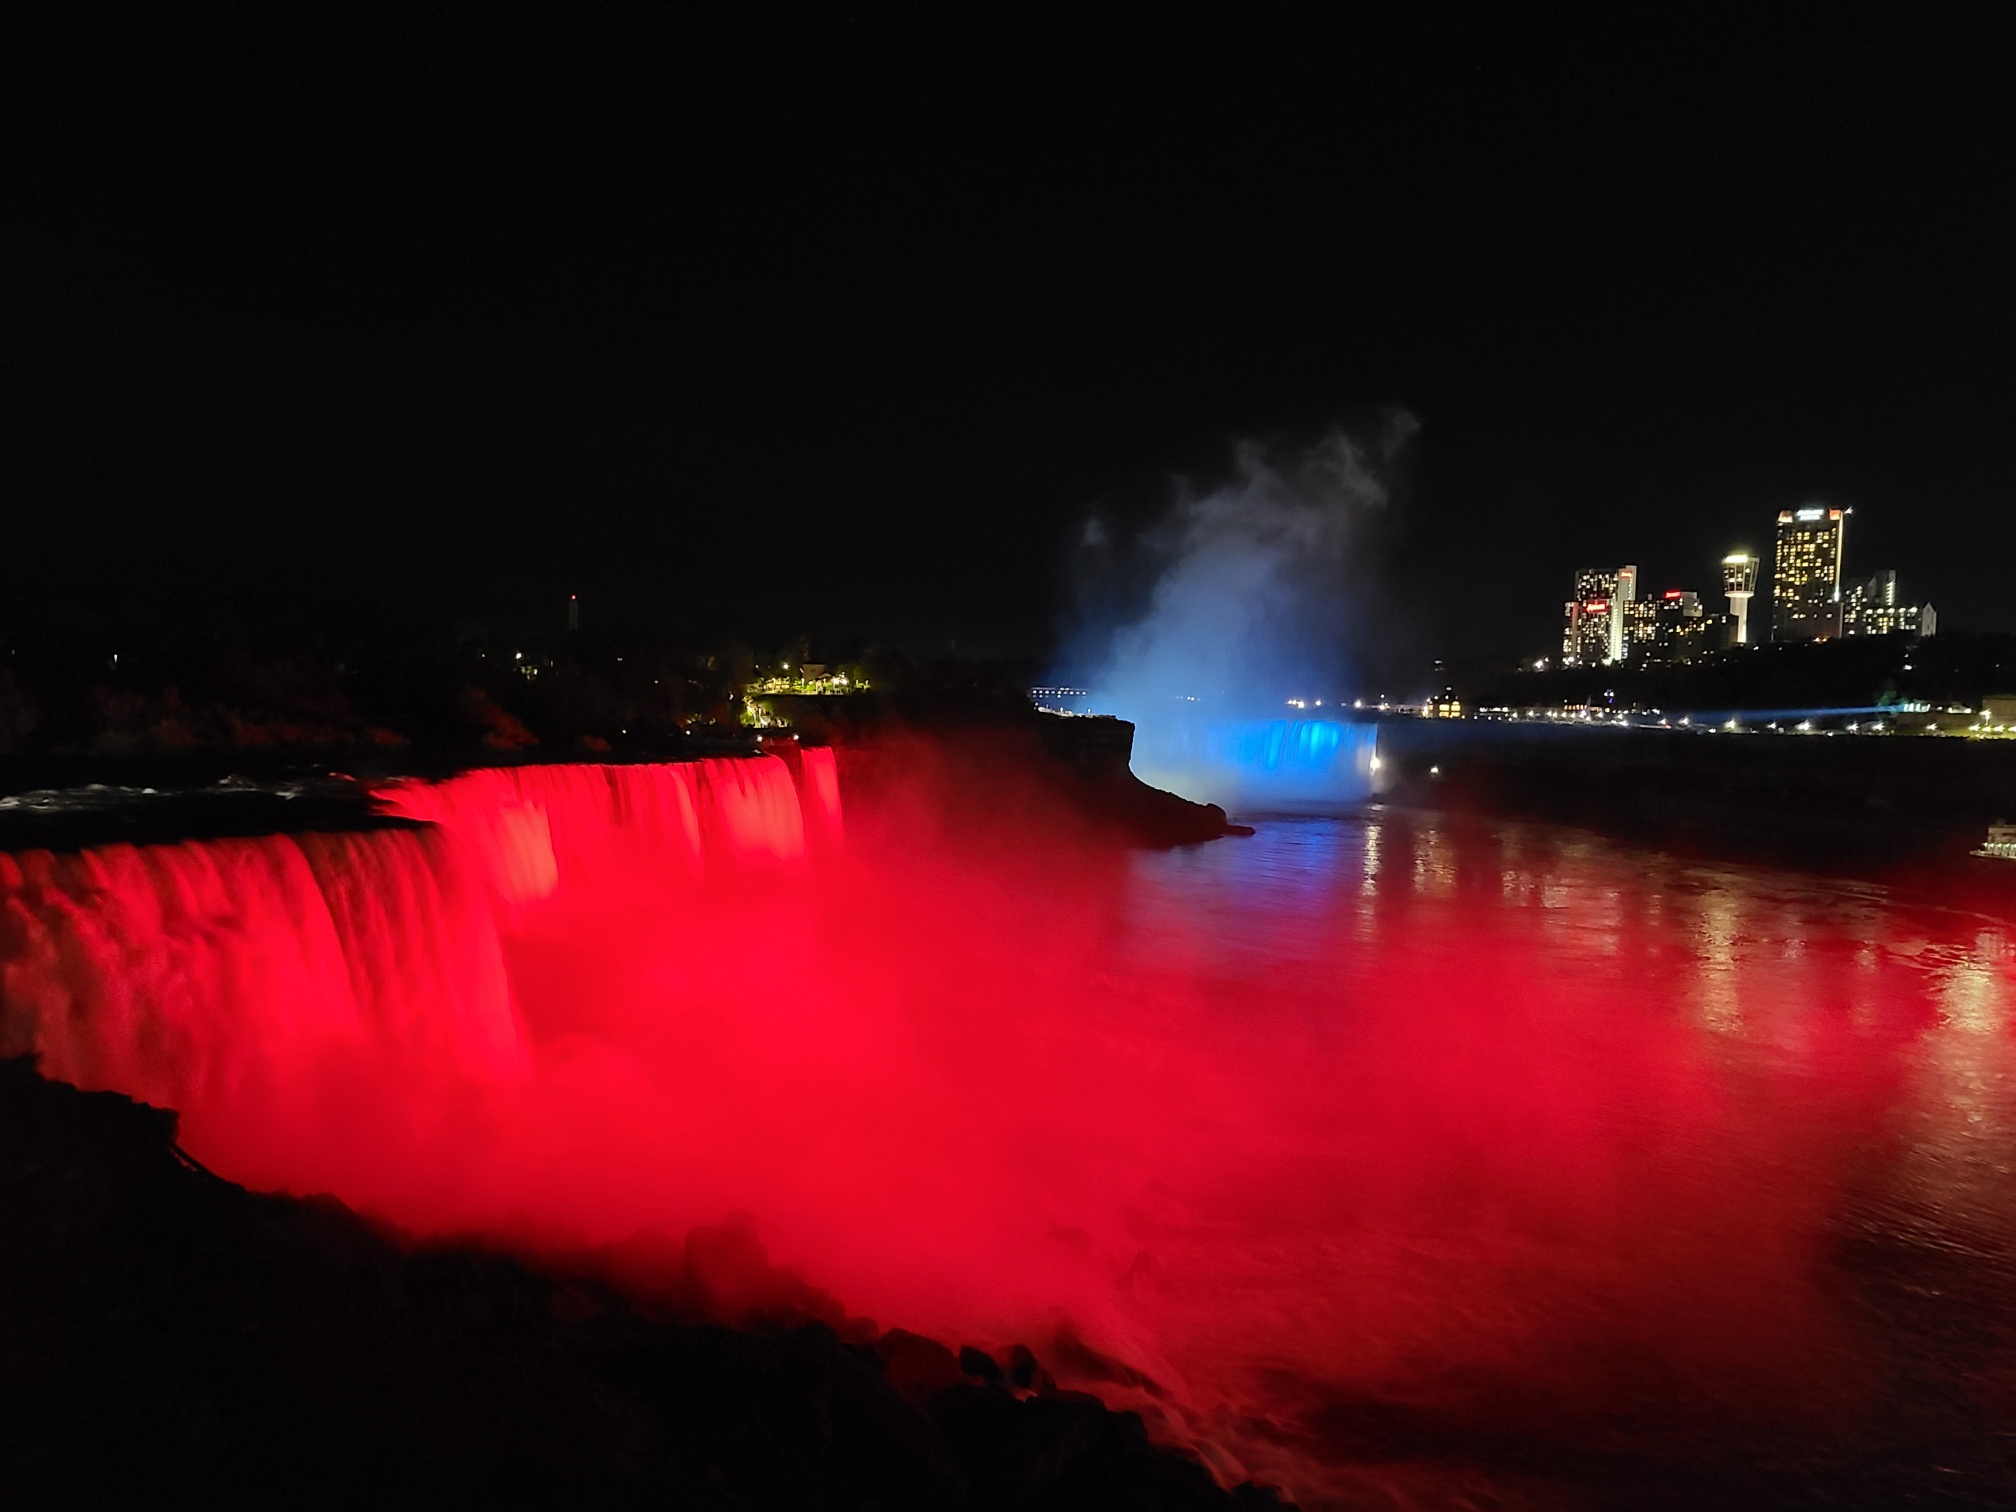  Niagara Falls light up in Croatian colours 